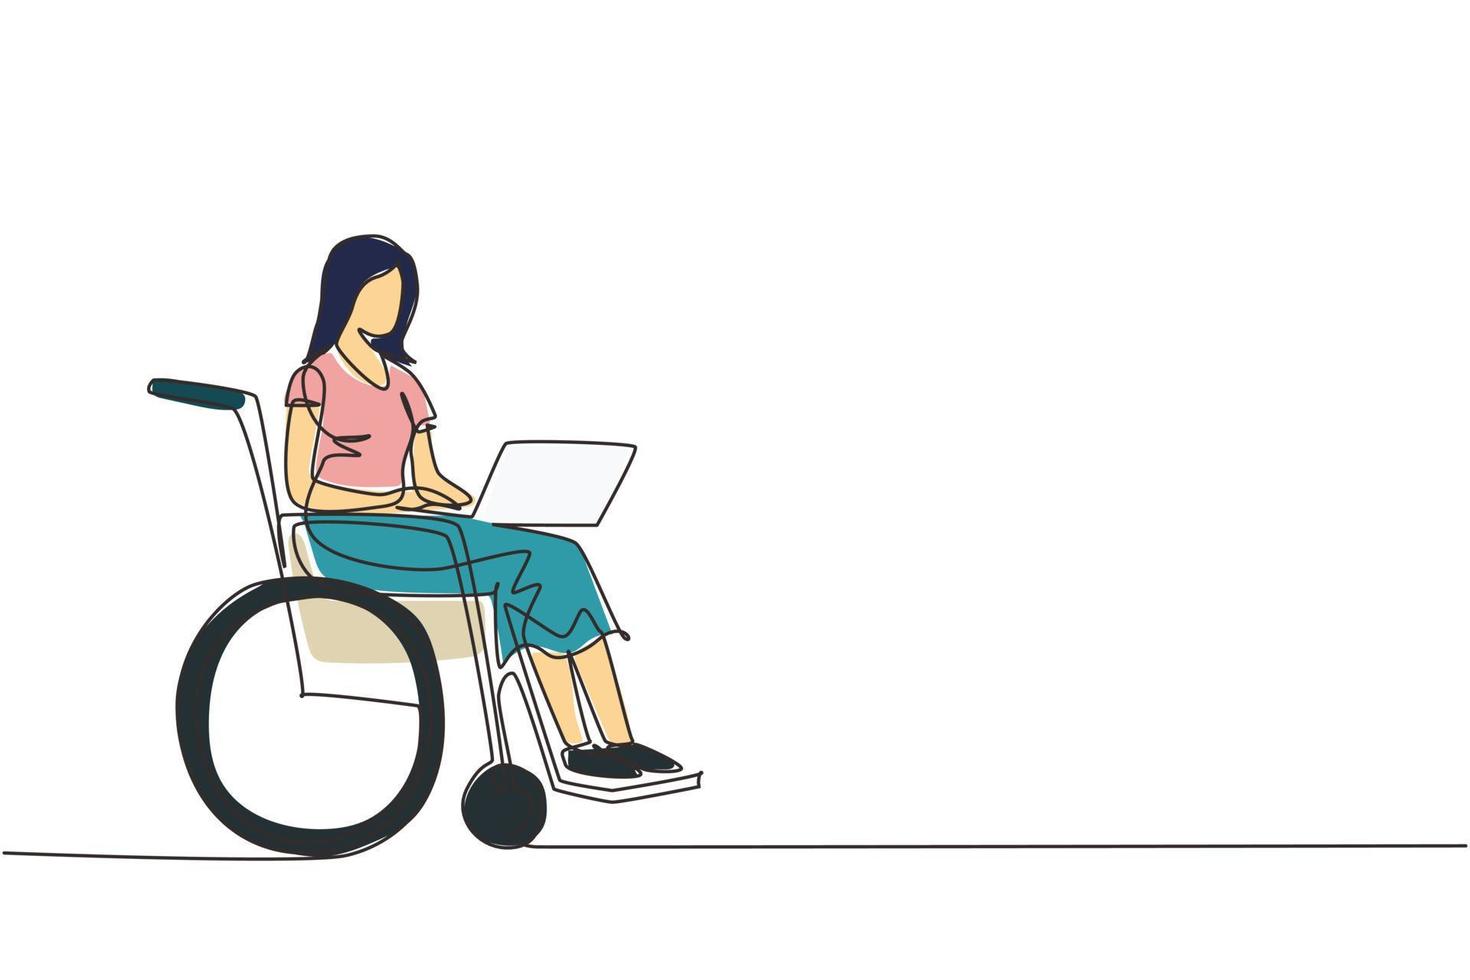 kontinuerlig en rad ritning funktionshindrade kvinna som arbetar på laptop. rullstol, idé, dator. frilans, funktionshinder. onlinejobb och startup. fysisk funktionsnedsättning och samhälle. enda rad rita design vektor